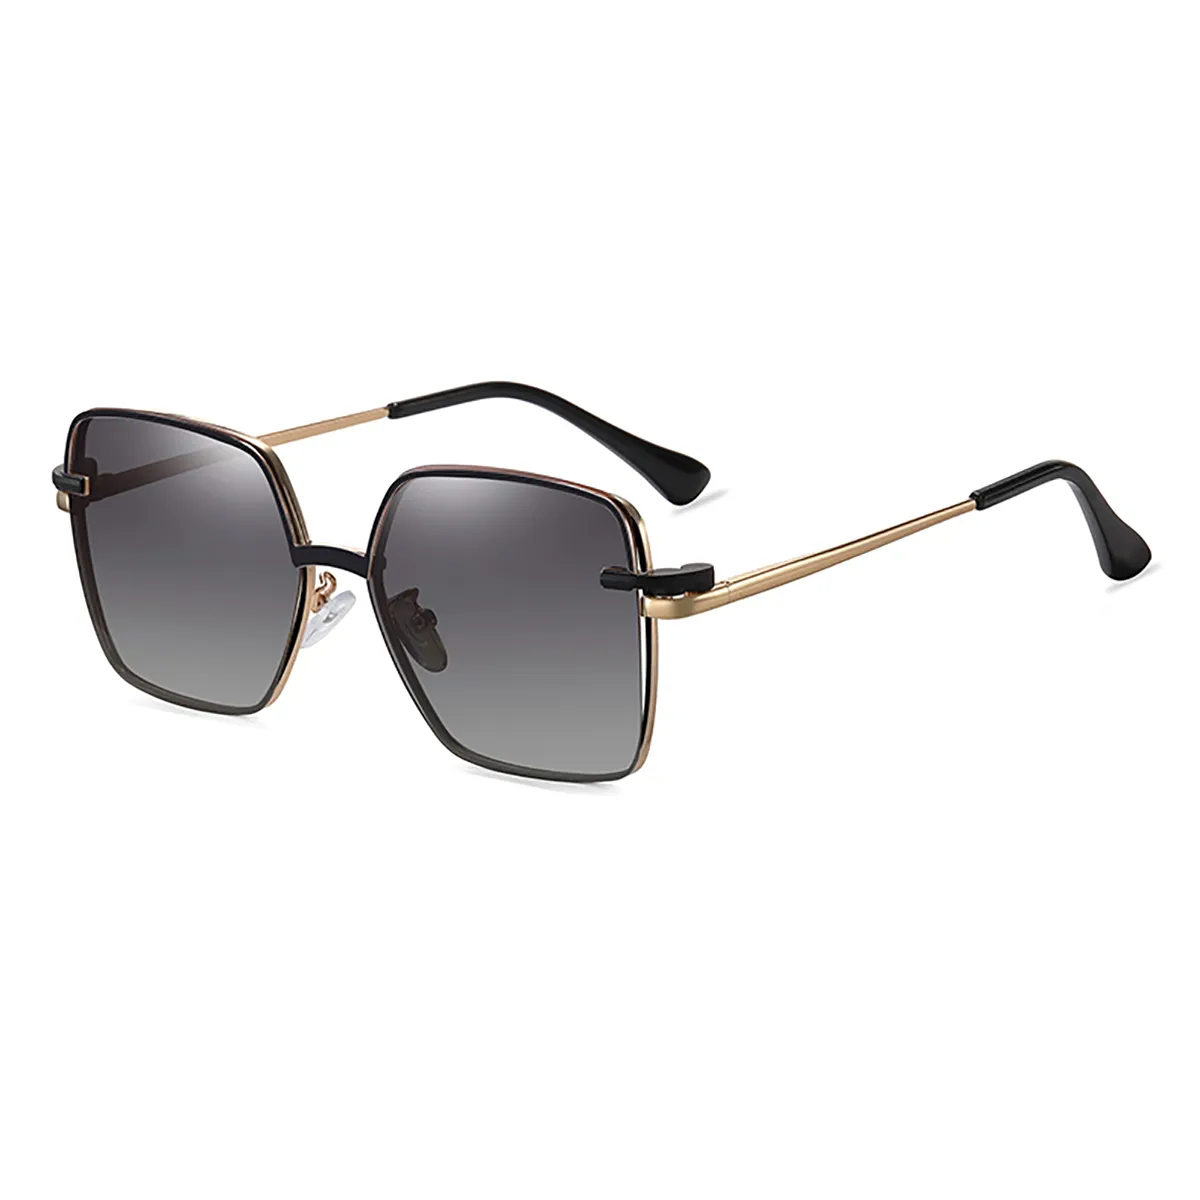 Square - Square Black Clip On Sunglasses for Women